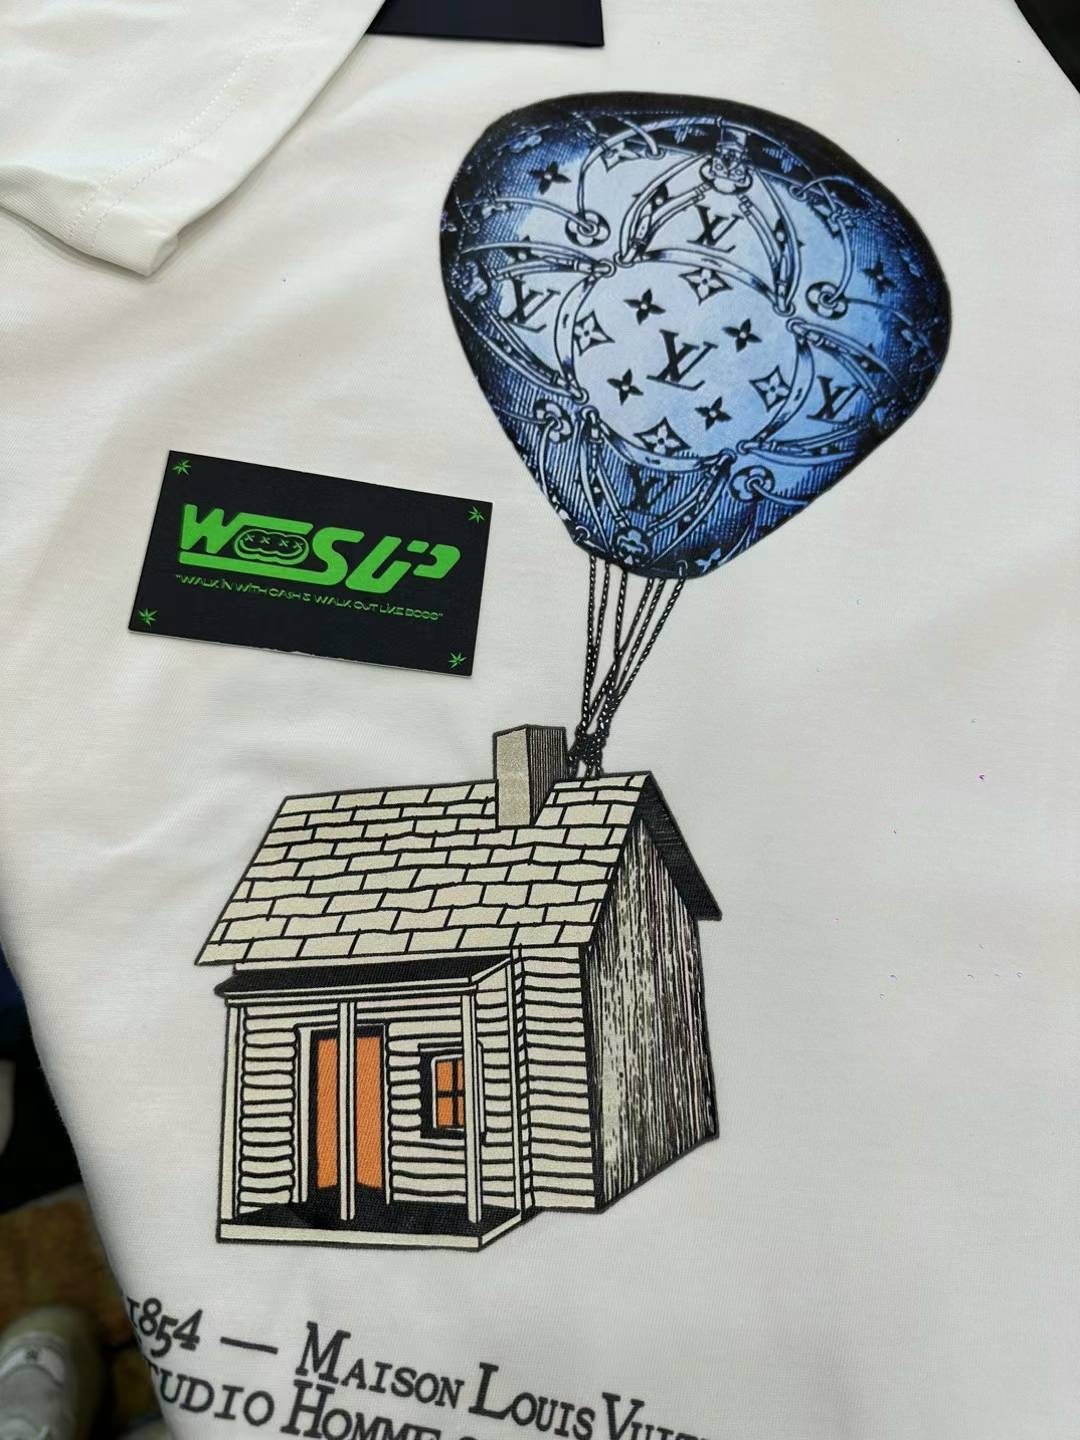 Lv T-shirt – Wooo's Up